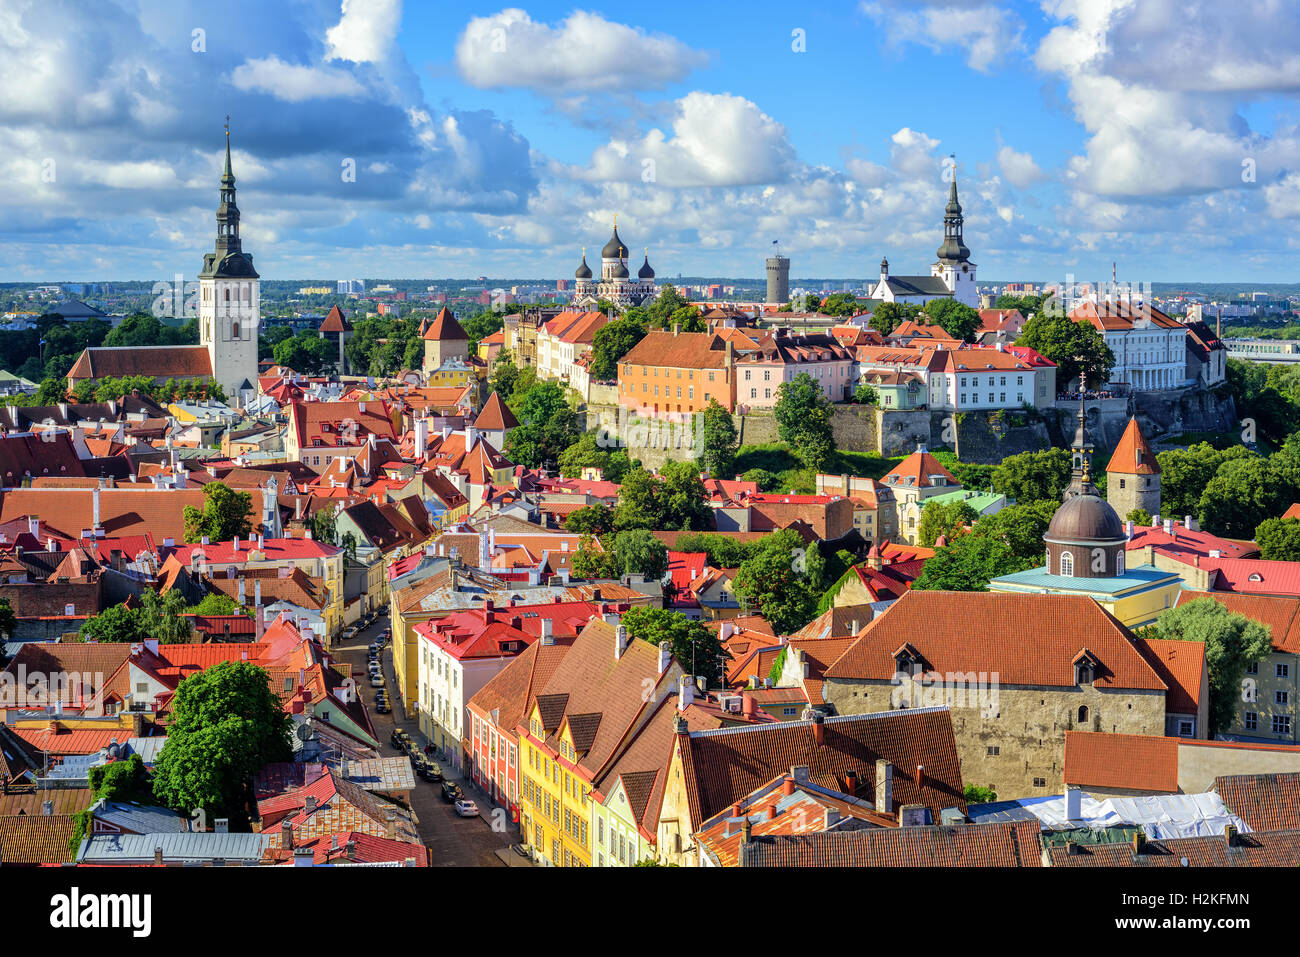 Vue panoramique sur le toit de tuiles rouges de la vieille ville médiévale de Tallinn et la colline de Toompea, l'Estonie Banque D'Images